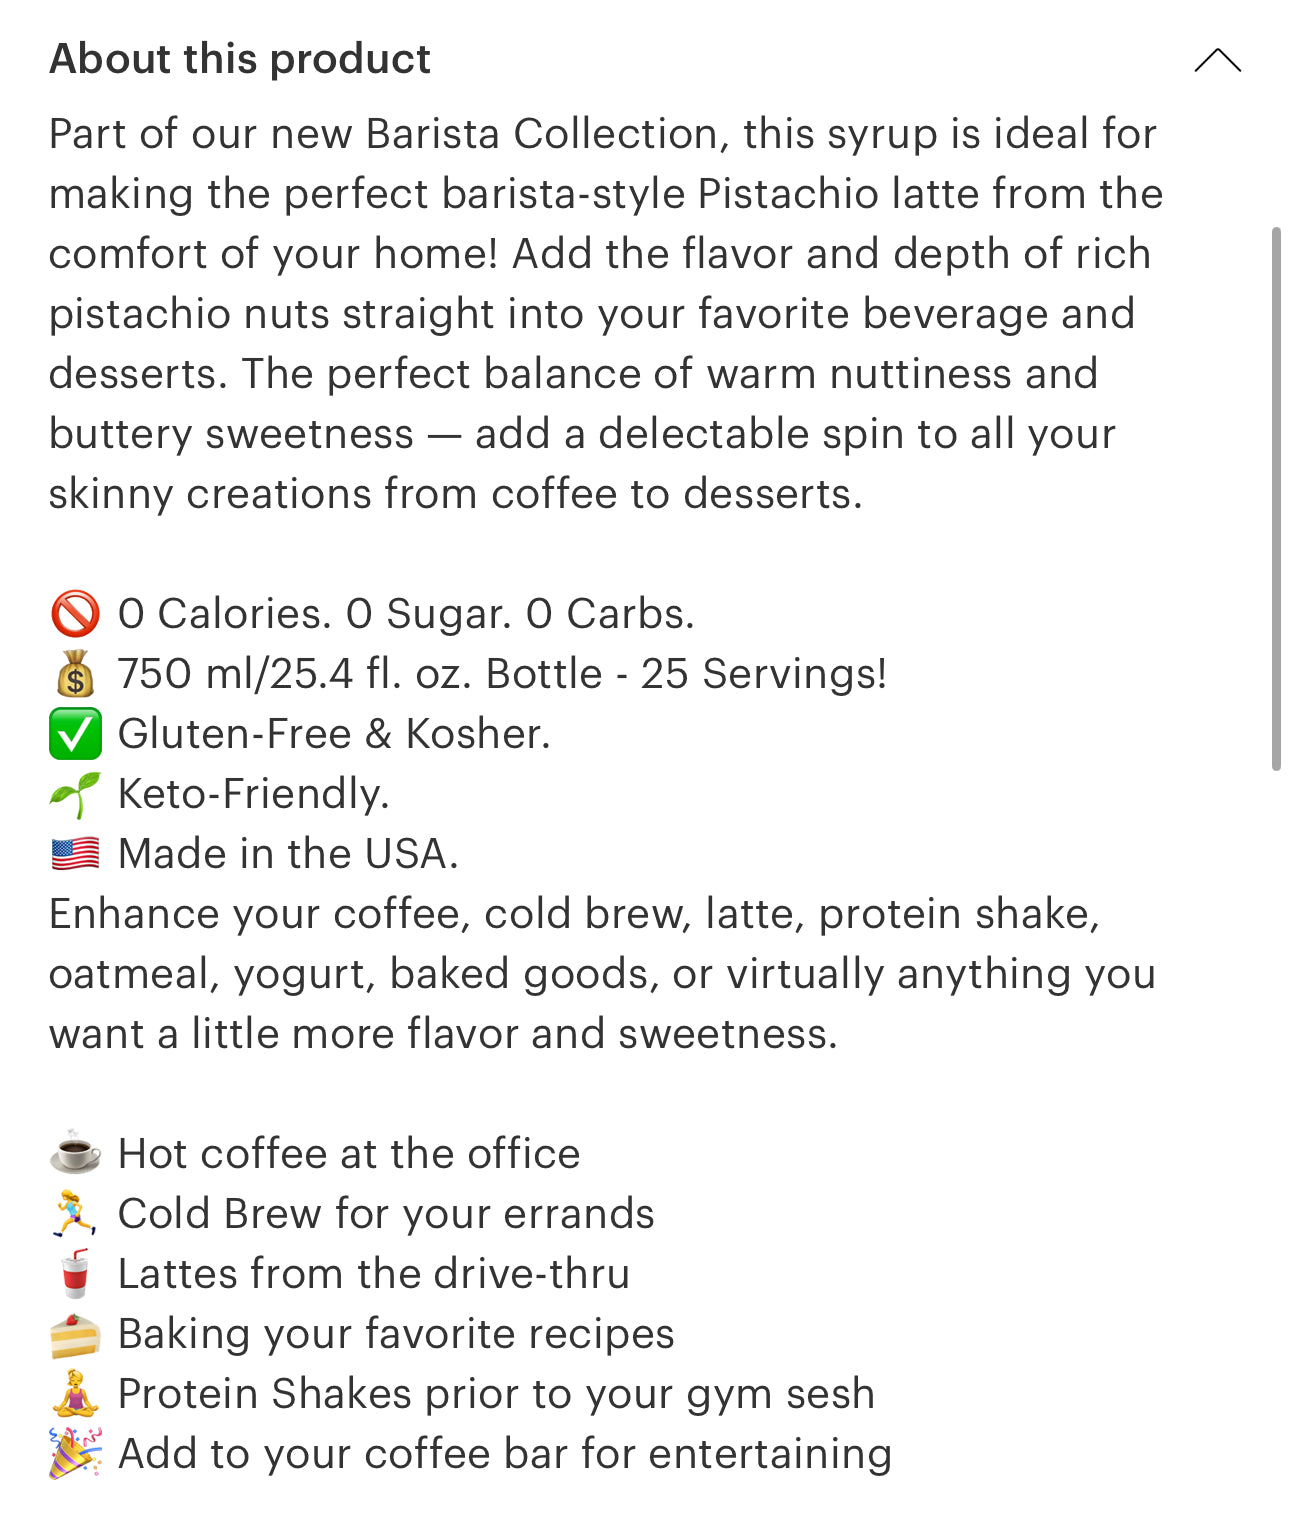 Pistachio Latte syrup